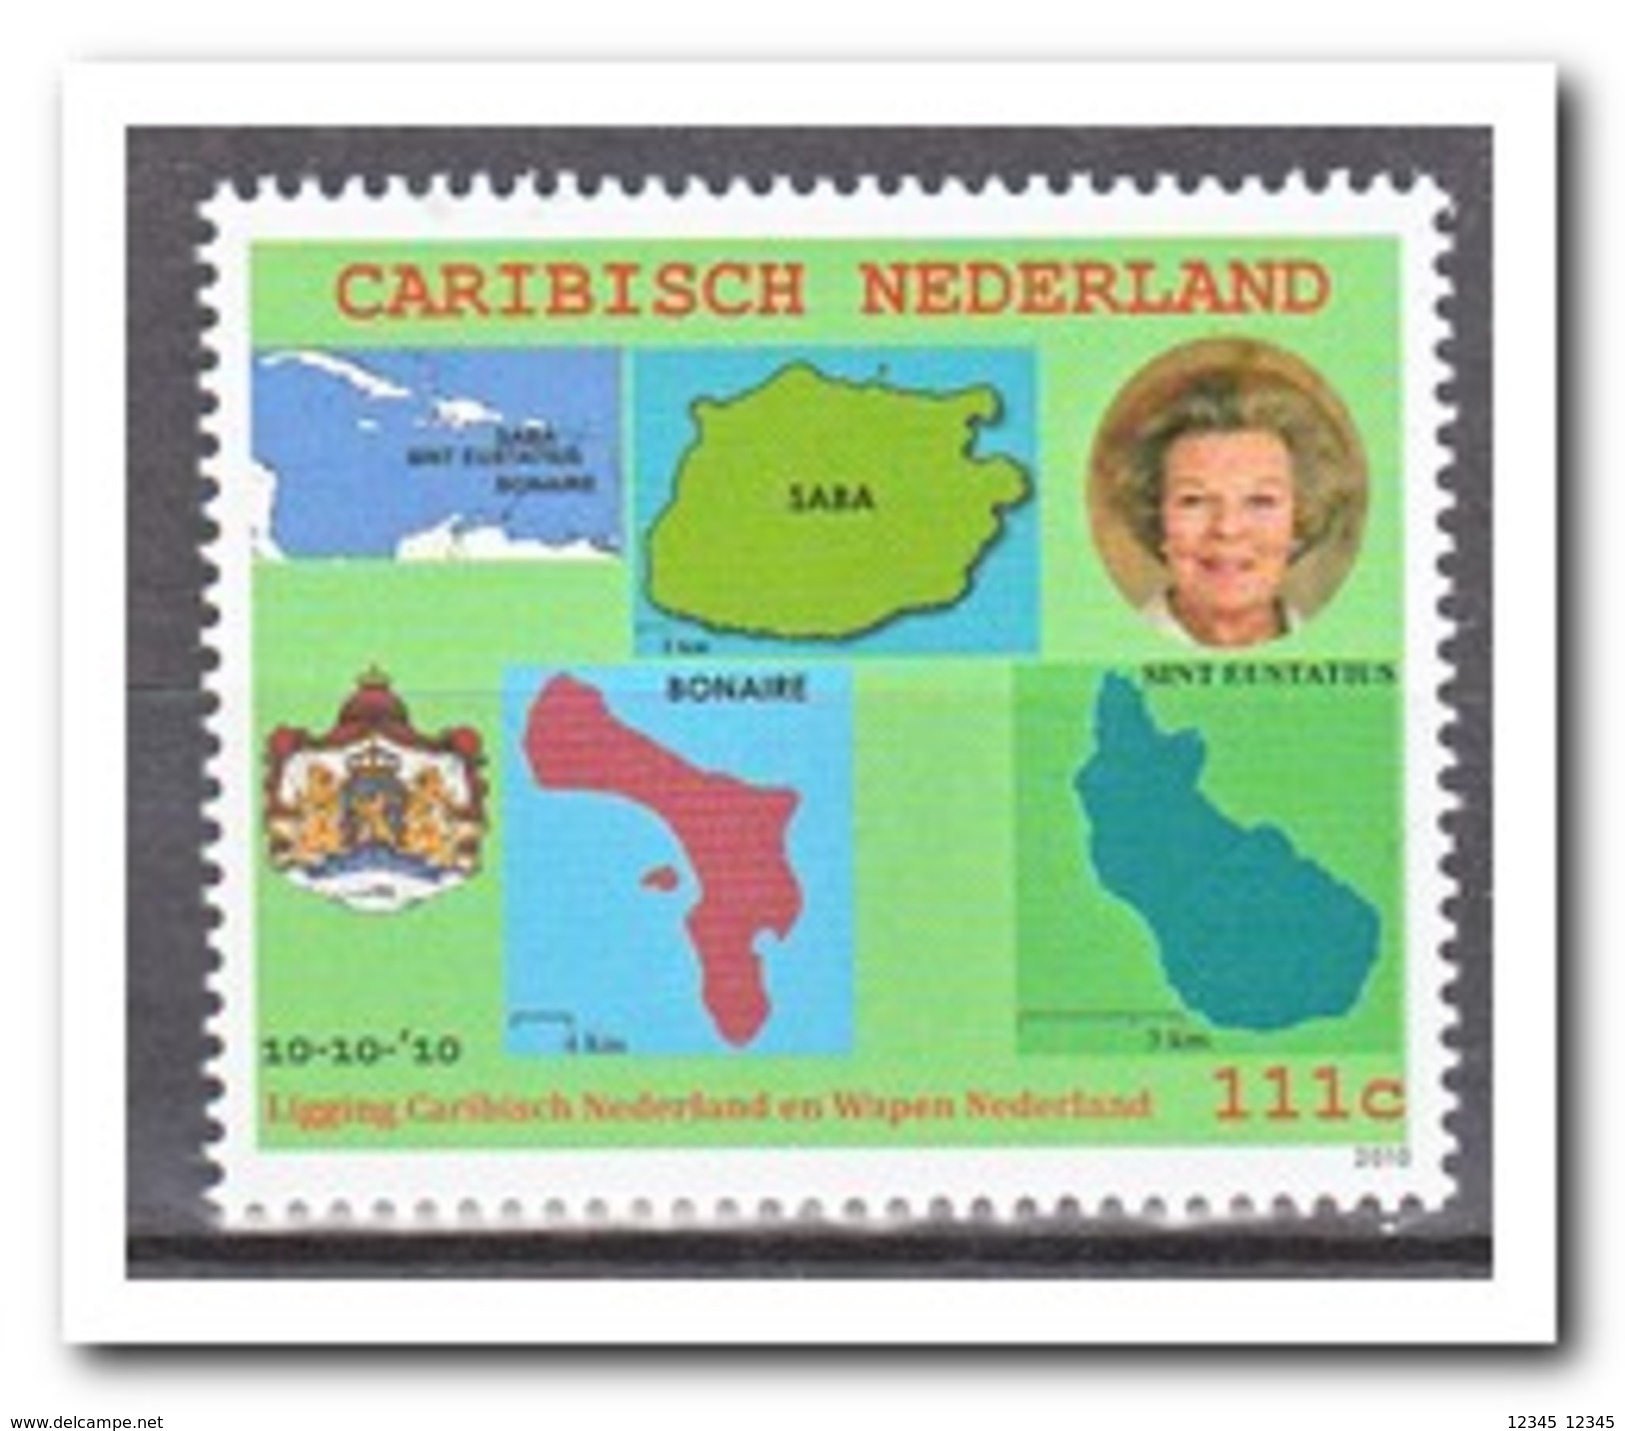 Caribisch Nederland 2010, Postfris MNH, Wapon, Flag, Map - Curacao, Netherlands Antilles, Aruba